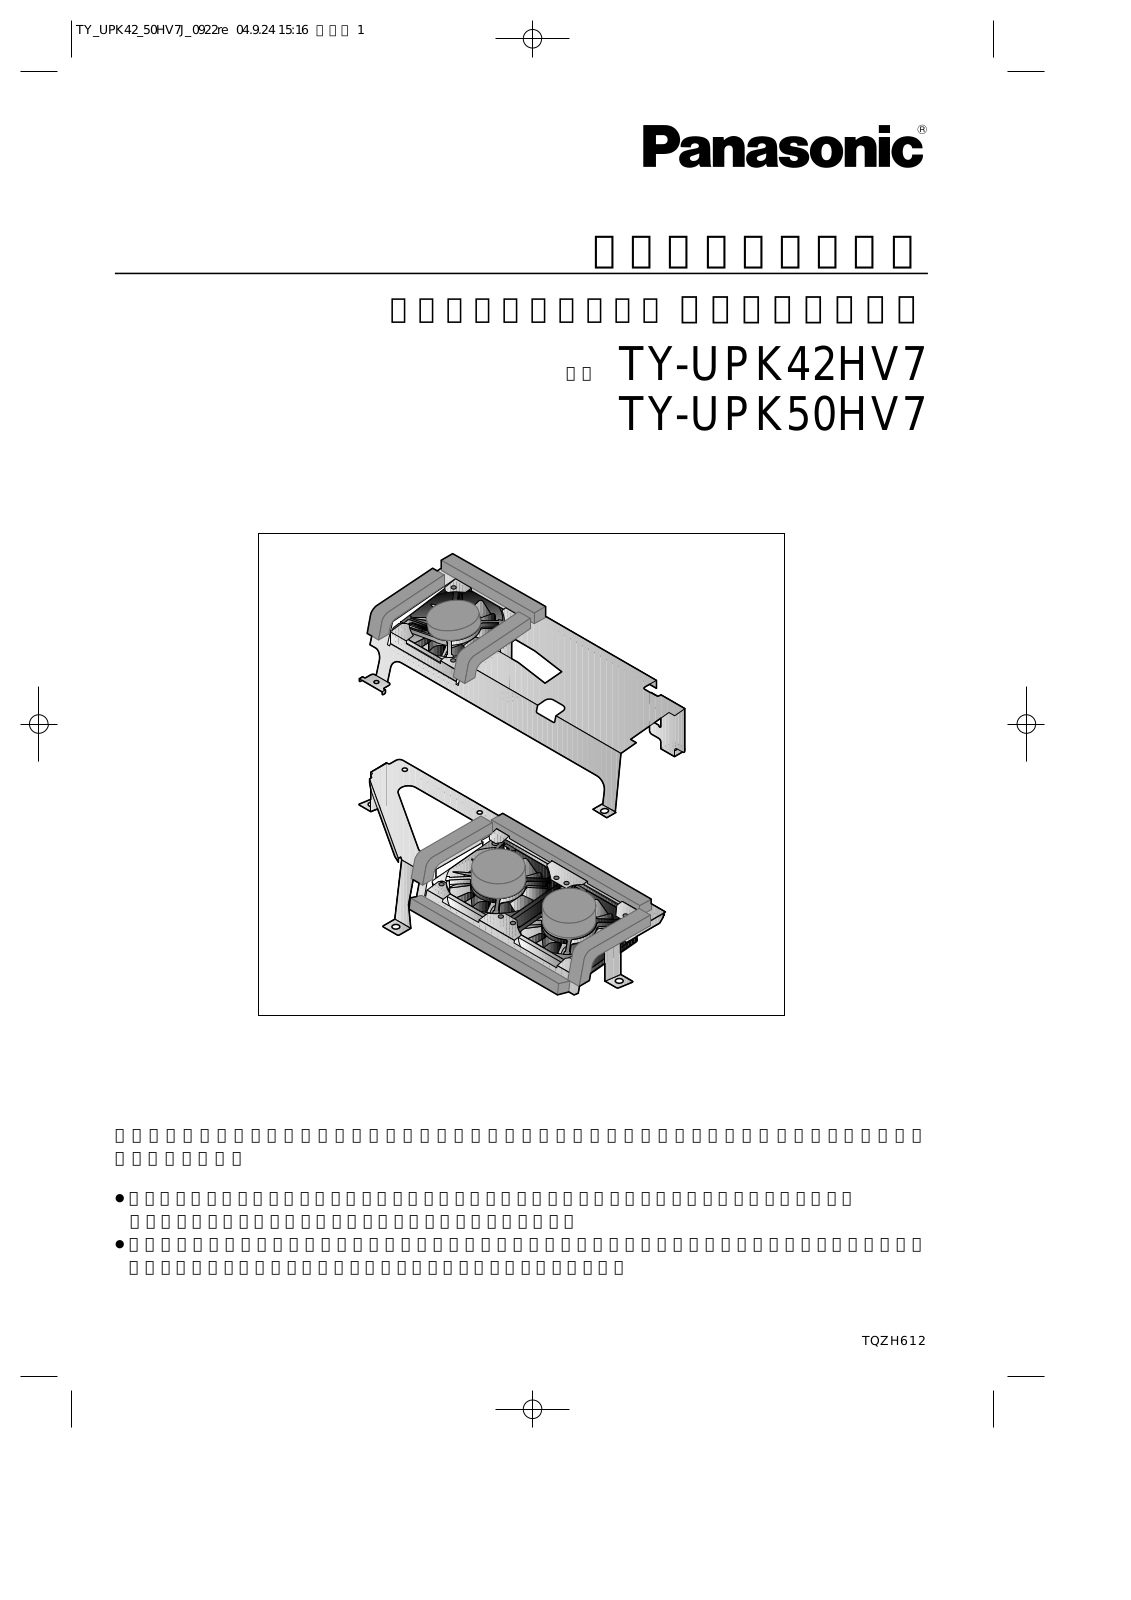 Panasonic TY-UPK42HV7, TY-UPK50HV7 User Manual